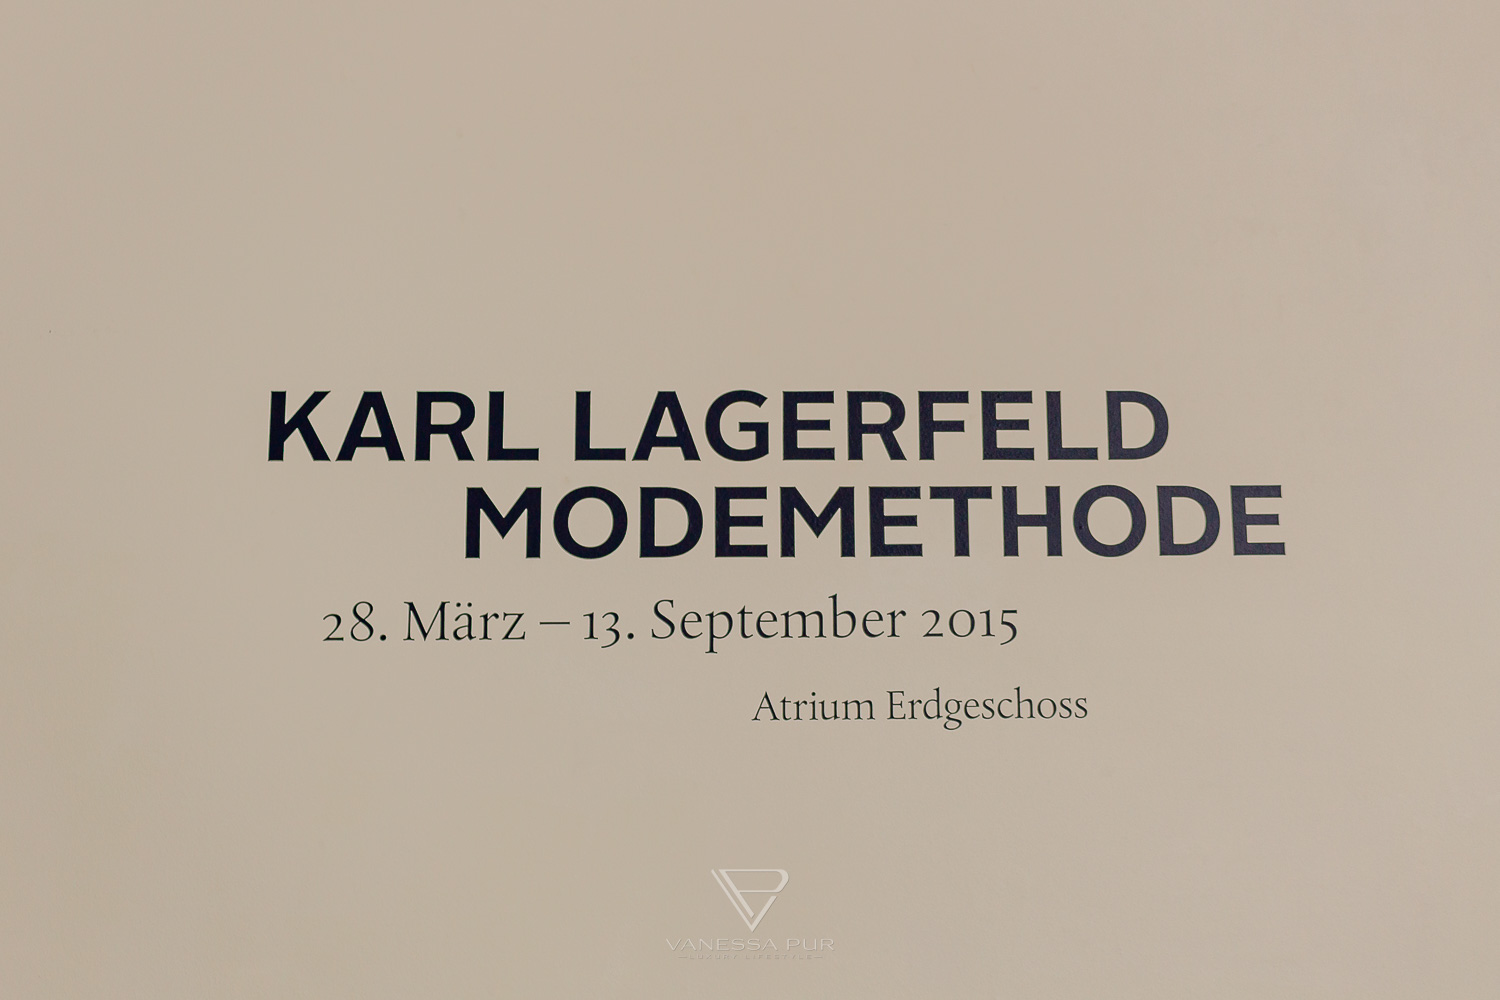 Karl Lagerfeld Ausstellung - Bundeskunsthalle Bonn - Karl Lagerfeld Ausstellung in Bonn - Bundeskunsthalle Museum passend zur Fashionweek